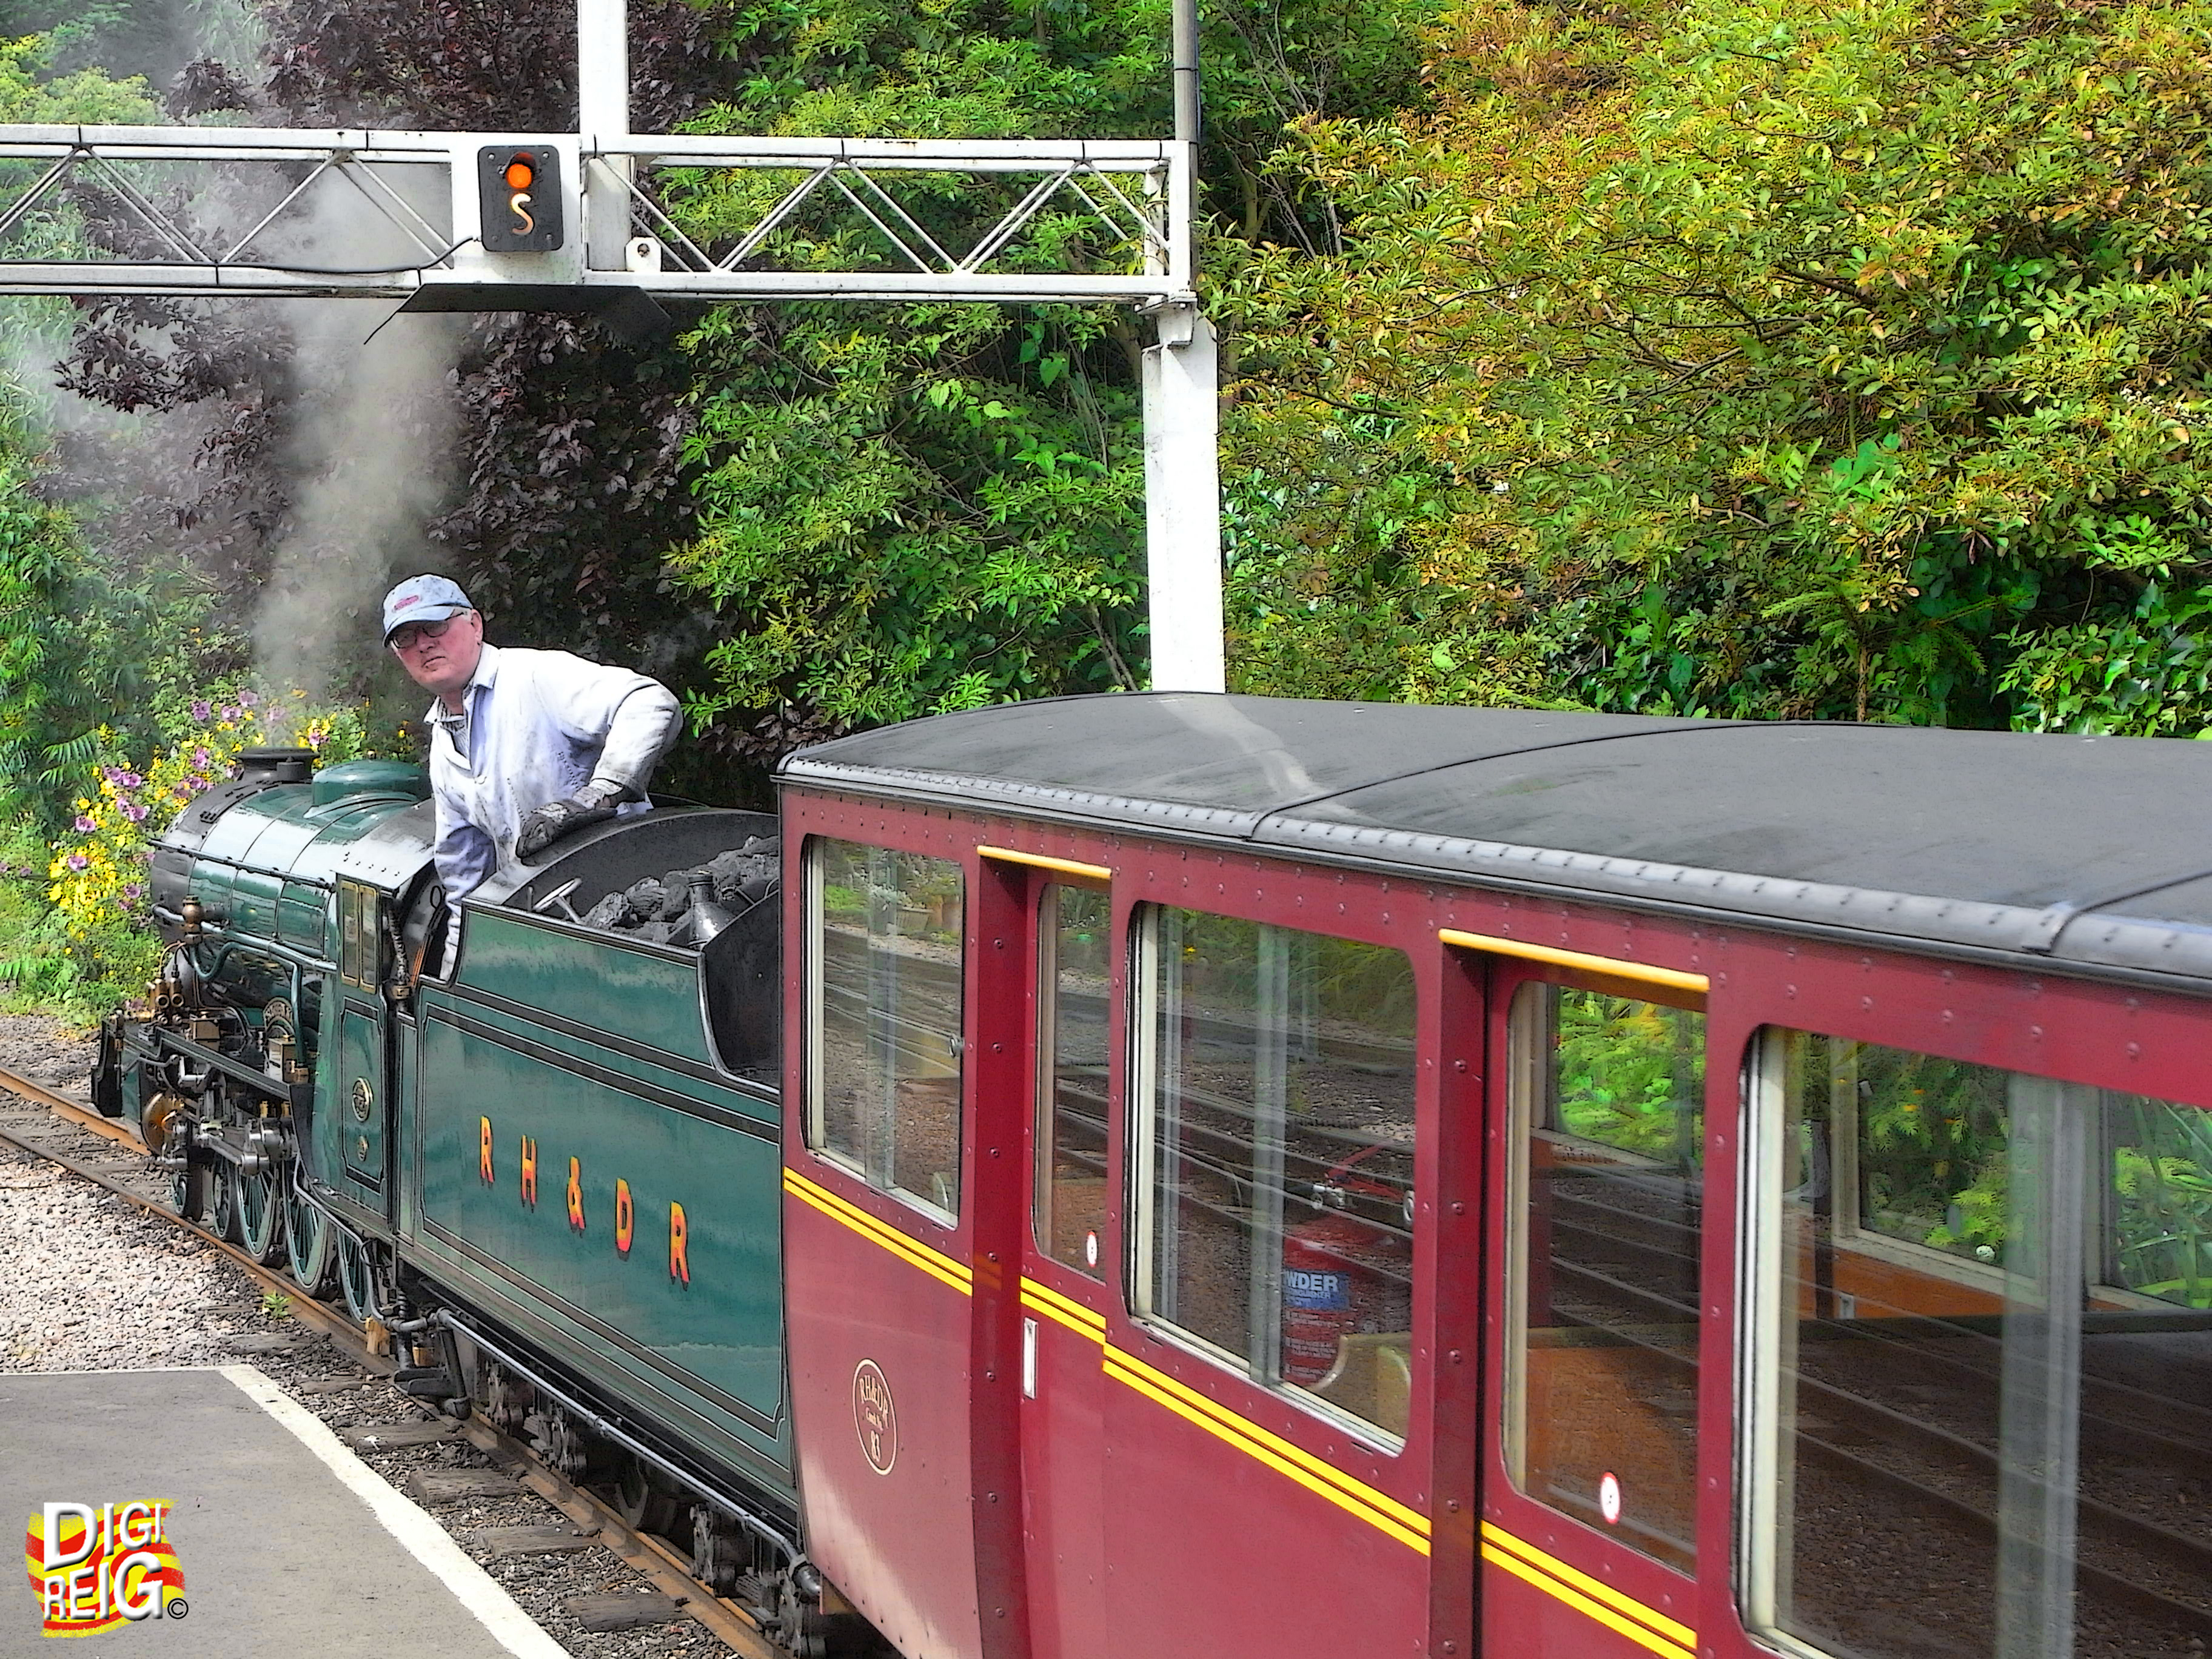 Foto: El tren público más pequeño del mundo. - Hythe (England), El Reino Unido